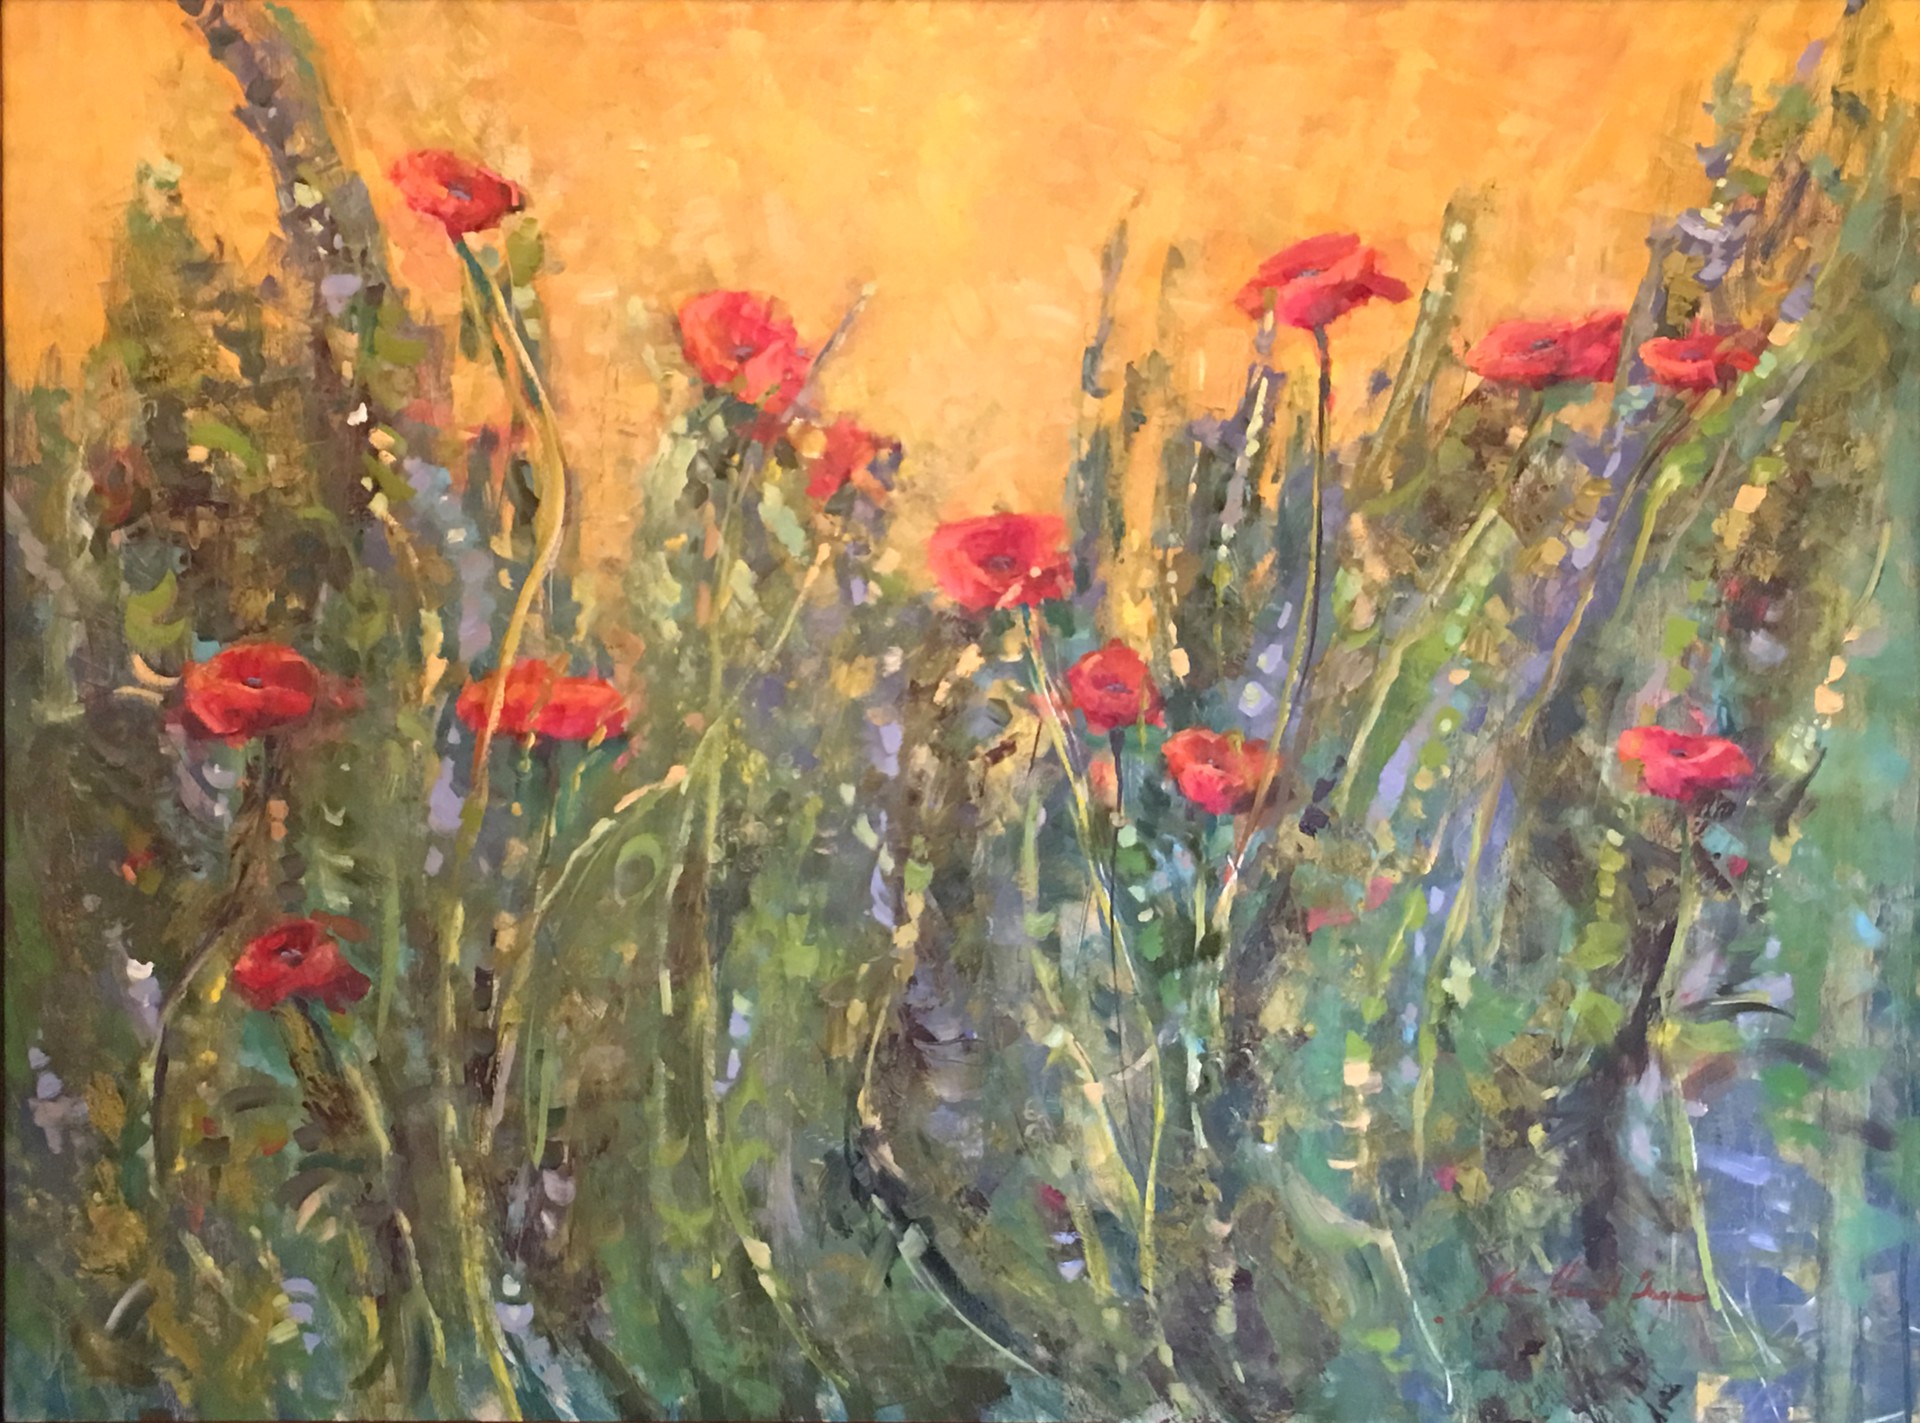 Sunshine on the Poppies (Italian Poppies) by Karen Hewitt Hagan